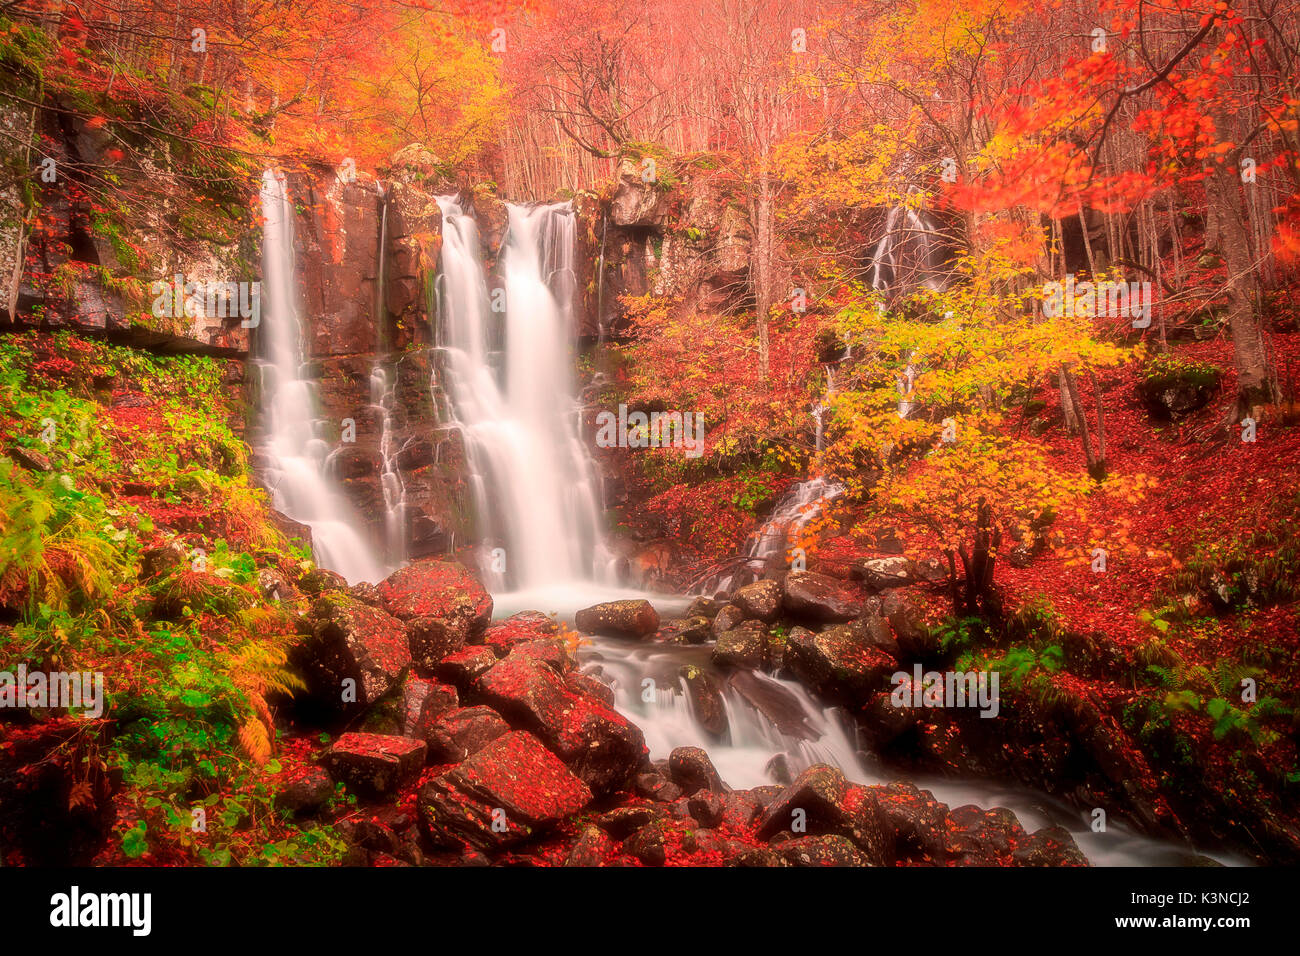 Autumn at Dardagna Falls, Lizzano in Belvedere, Emilia Romagna,Italy Stock Photo